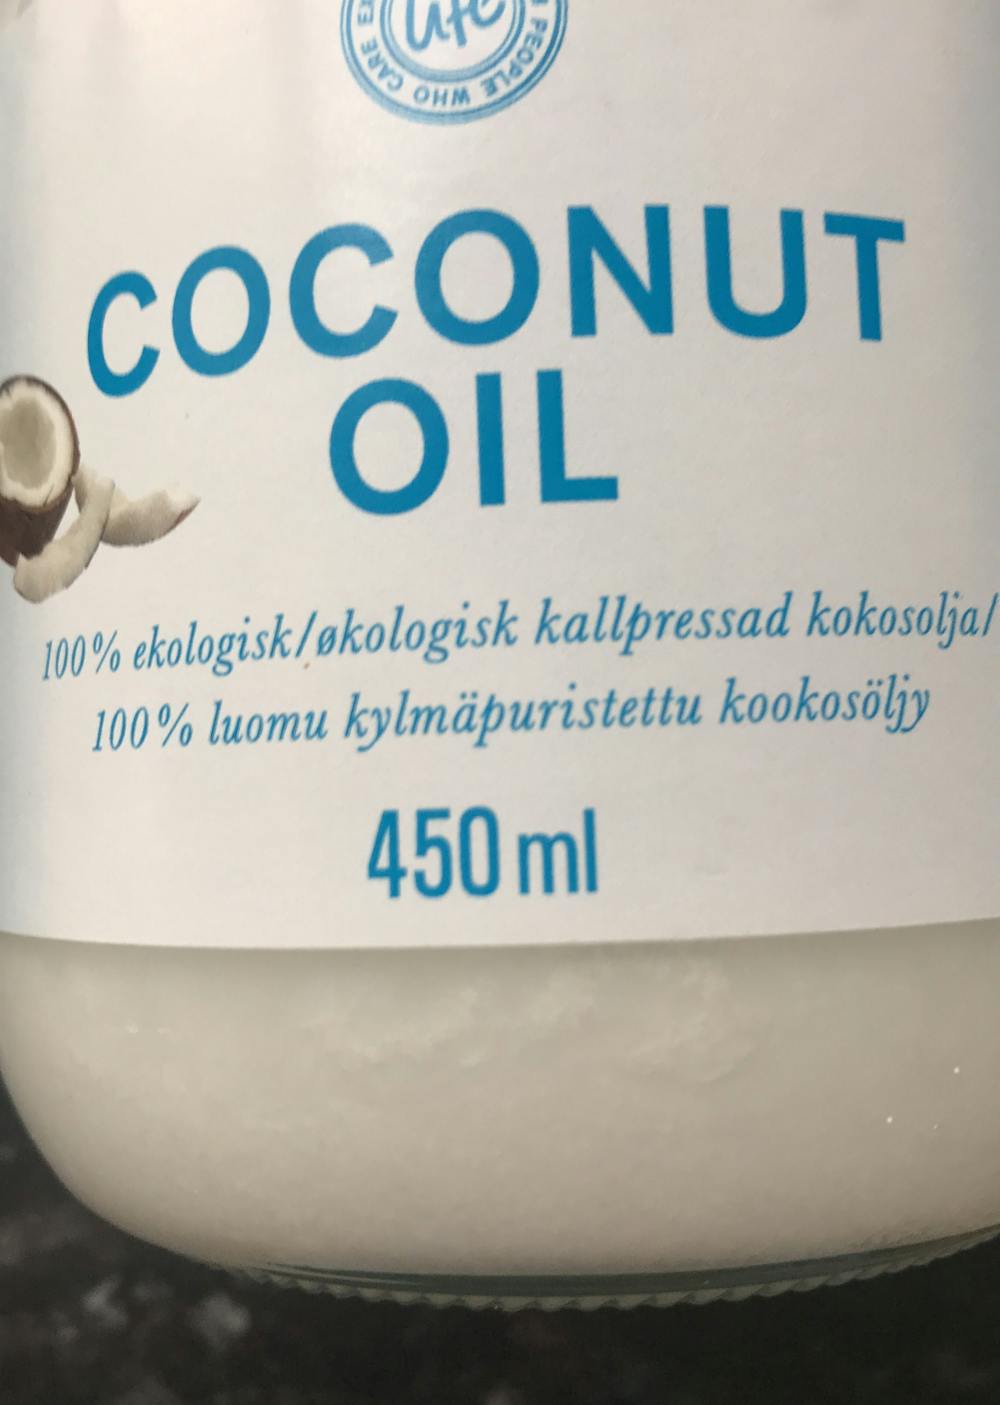 Ingredienslisten til Coconut oil , Life 